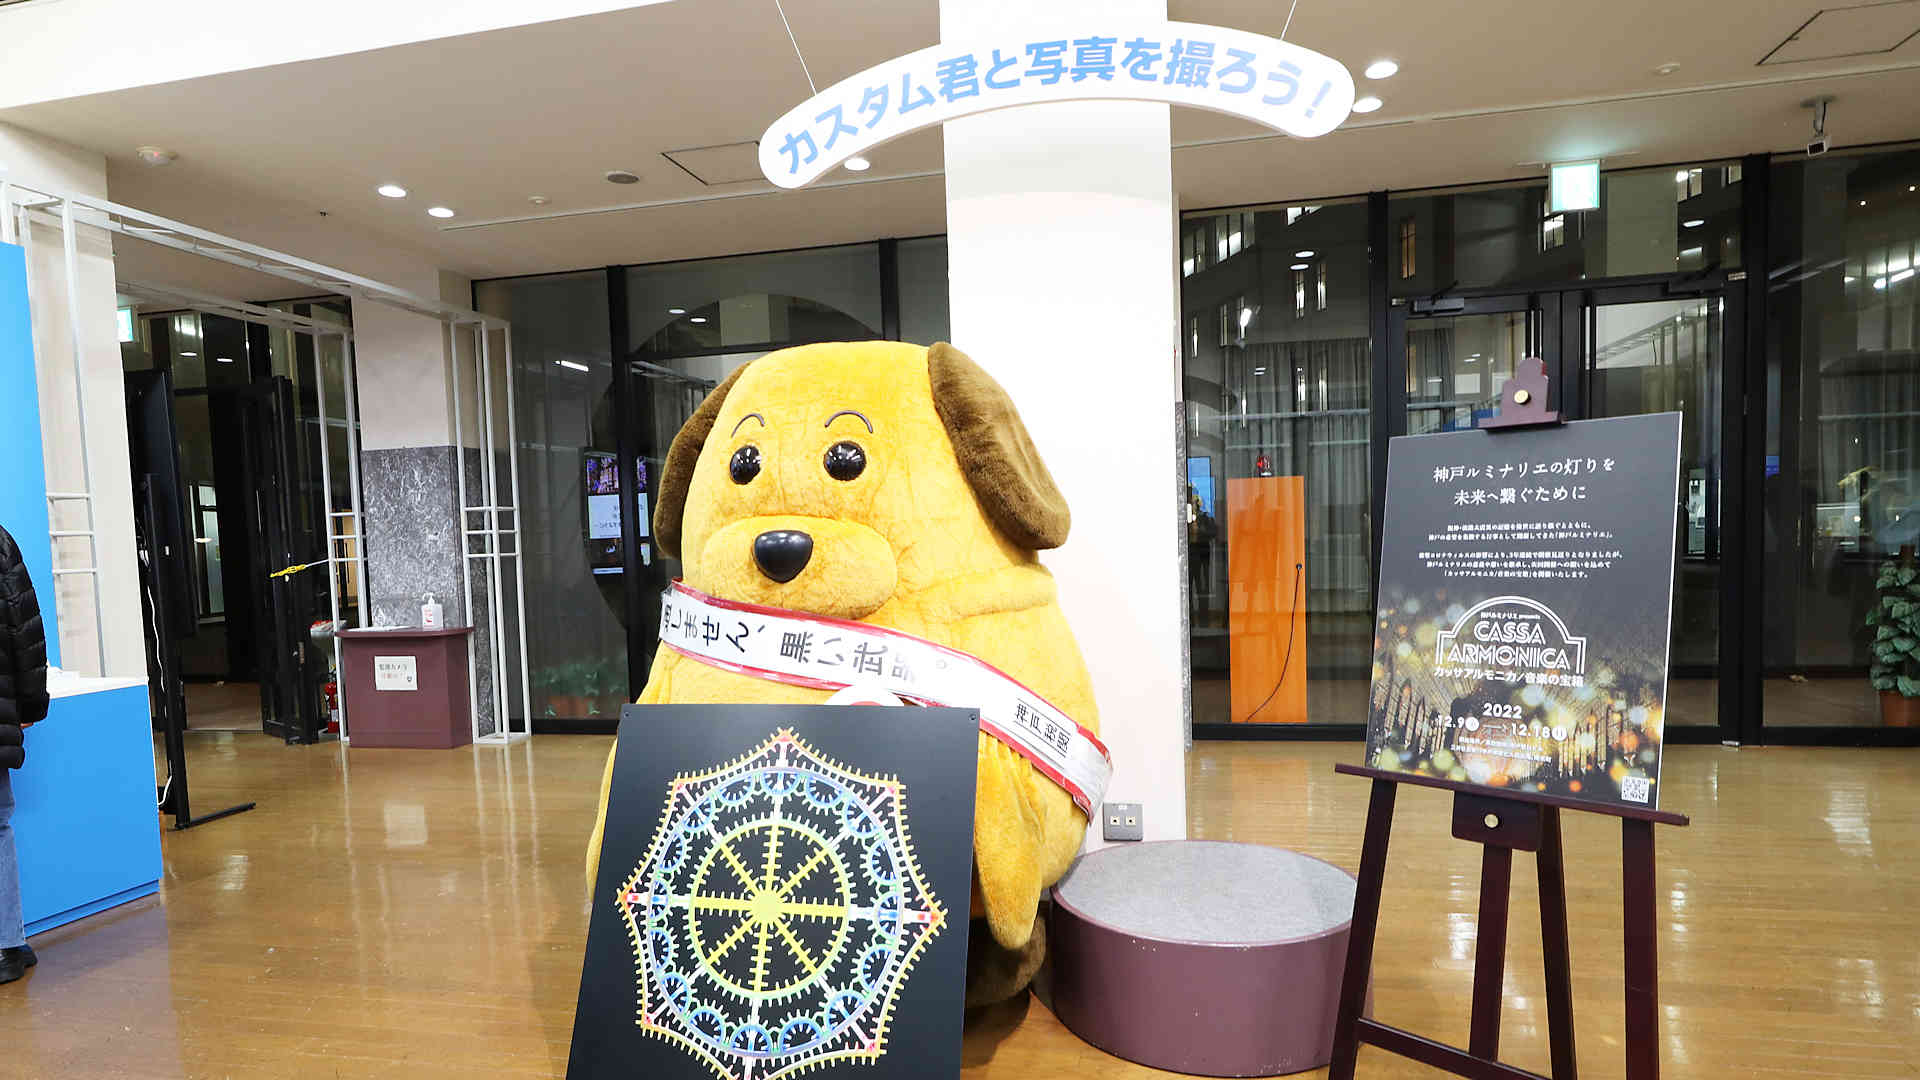 神戸税関のマスコット「カスタム君」と神戸ルミナリエのパネル展示